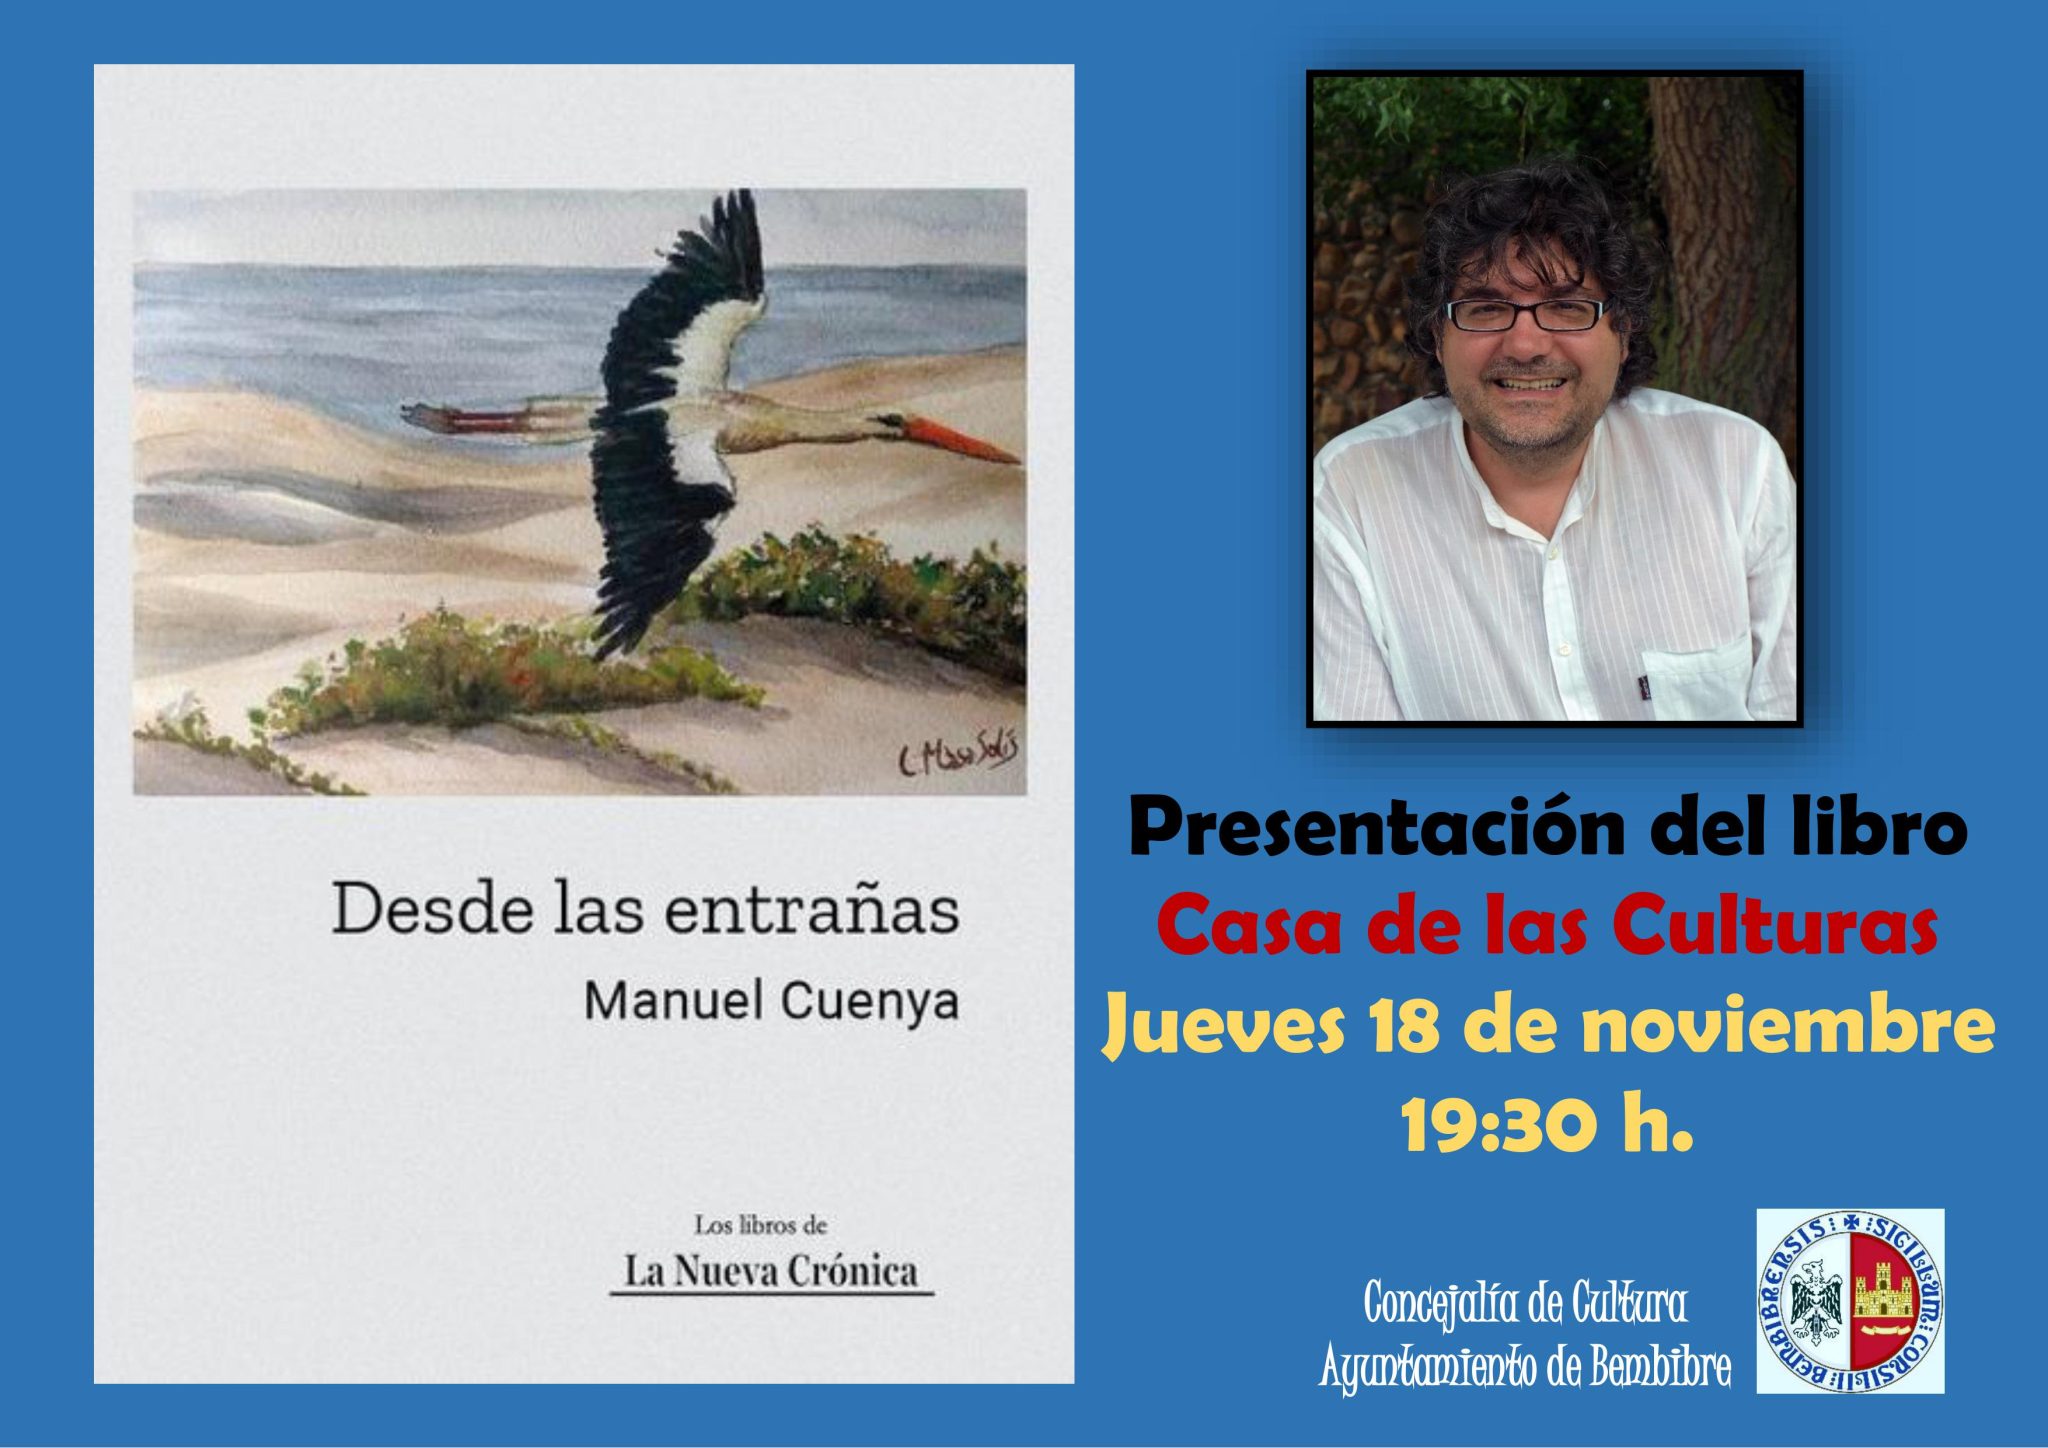 Presentación en Bembibre del libro de Manuel Cuenya "Desde las entrañas" 1